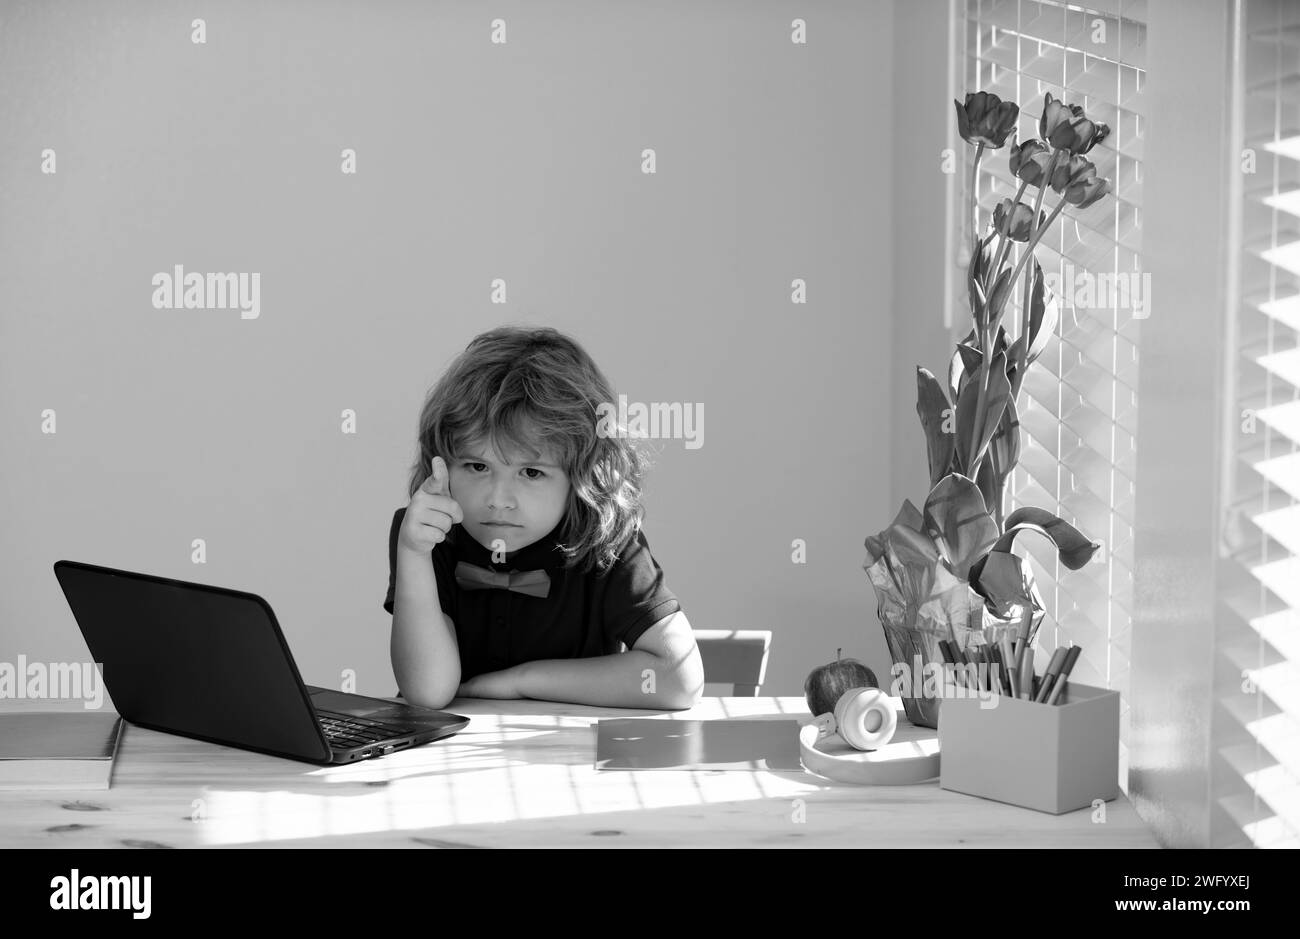 Premier jour à l'école. Petits enfants mignons utilisant un ordinateur portable, étudiant par e-learning en ligne Banque D'Images